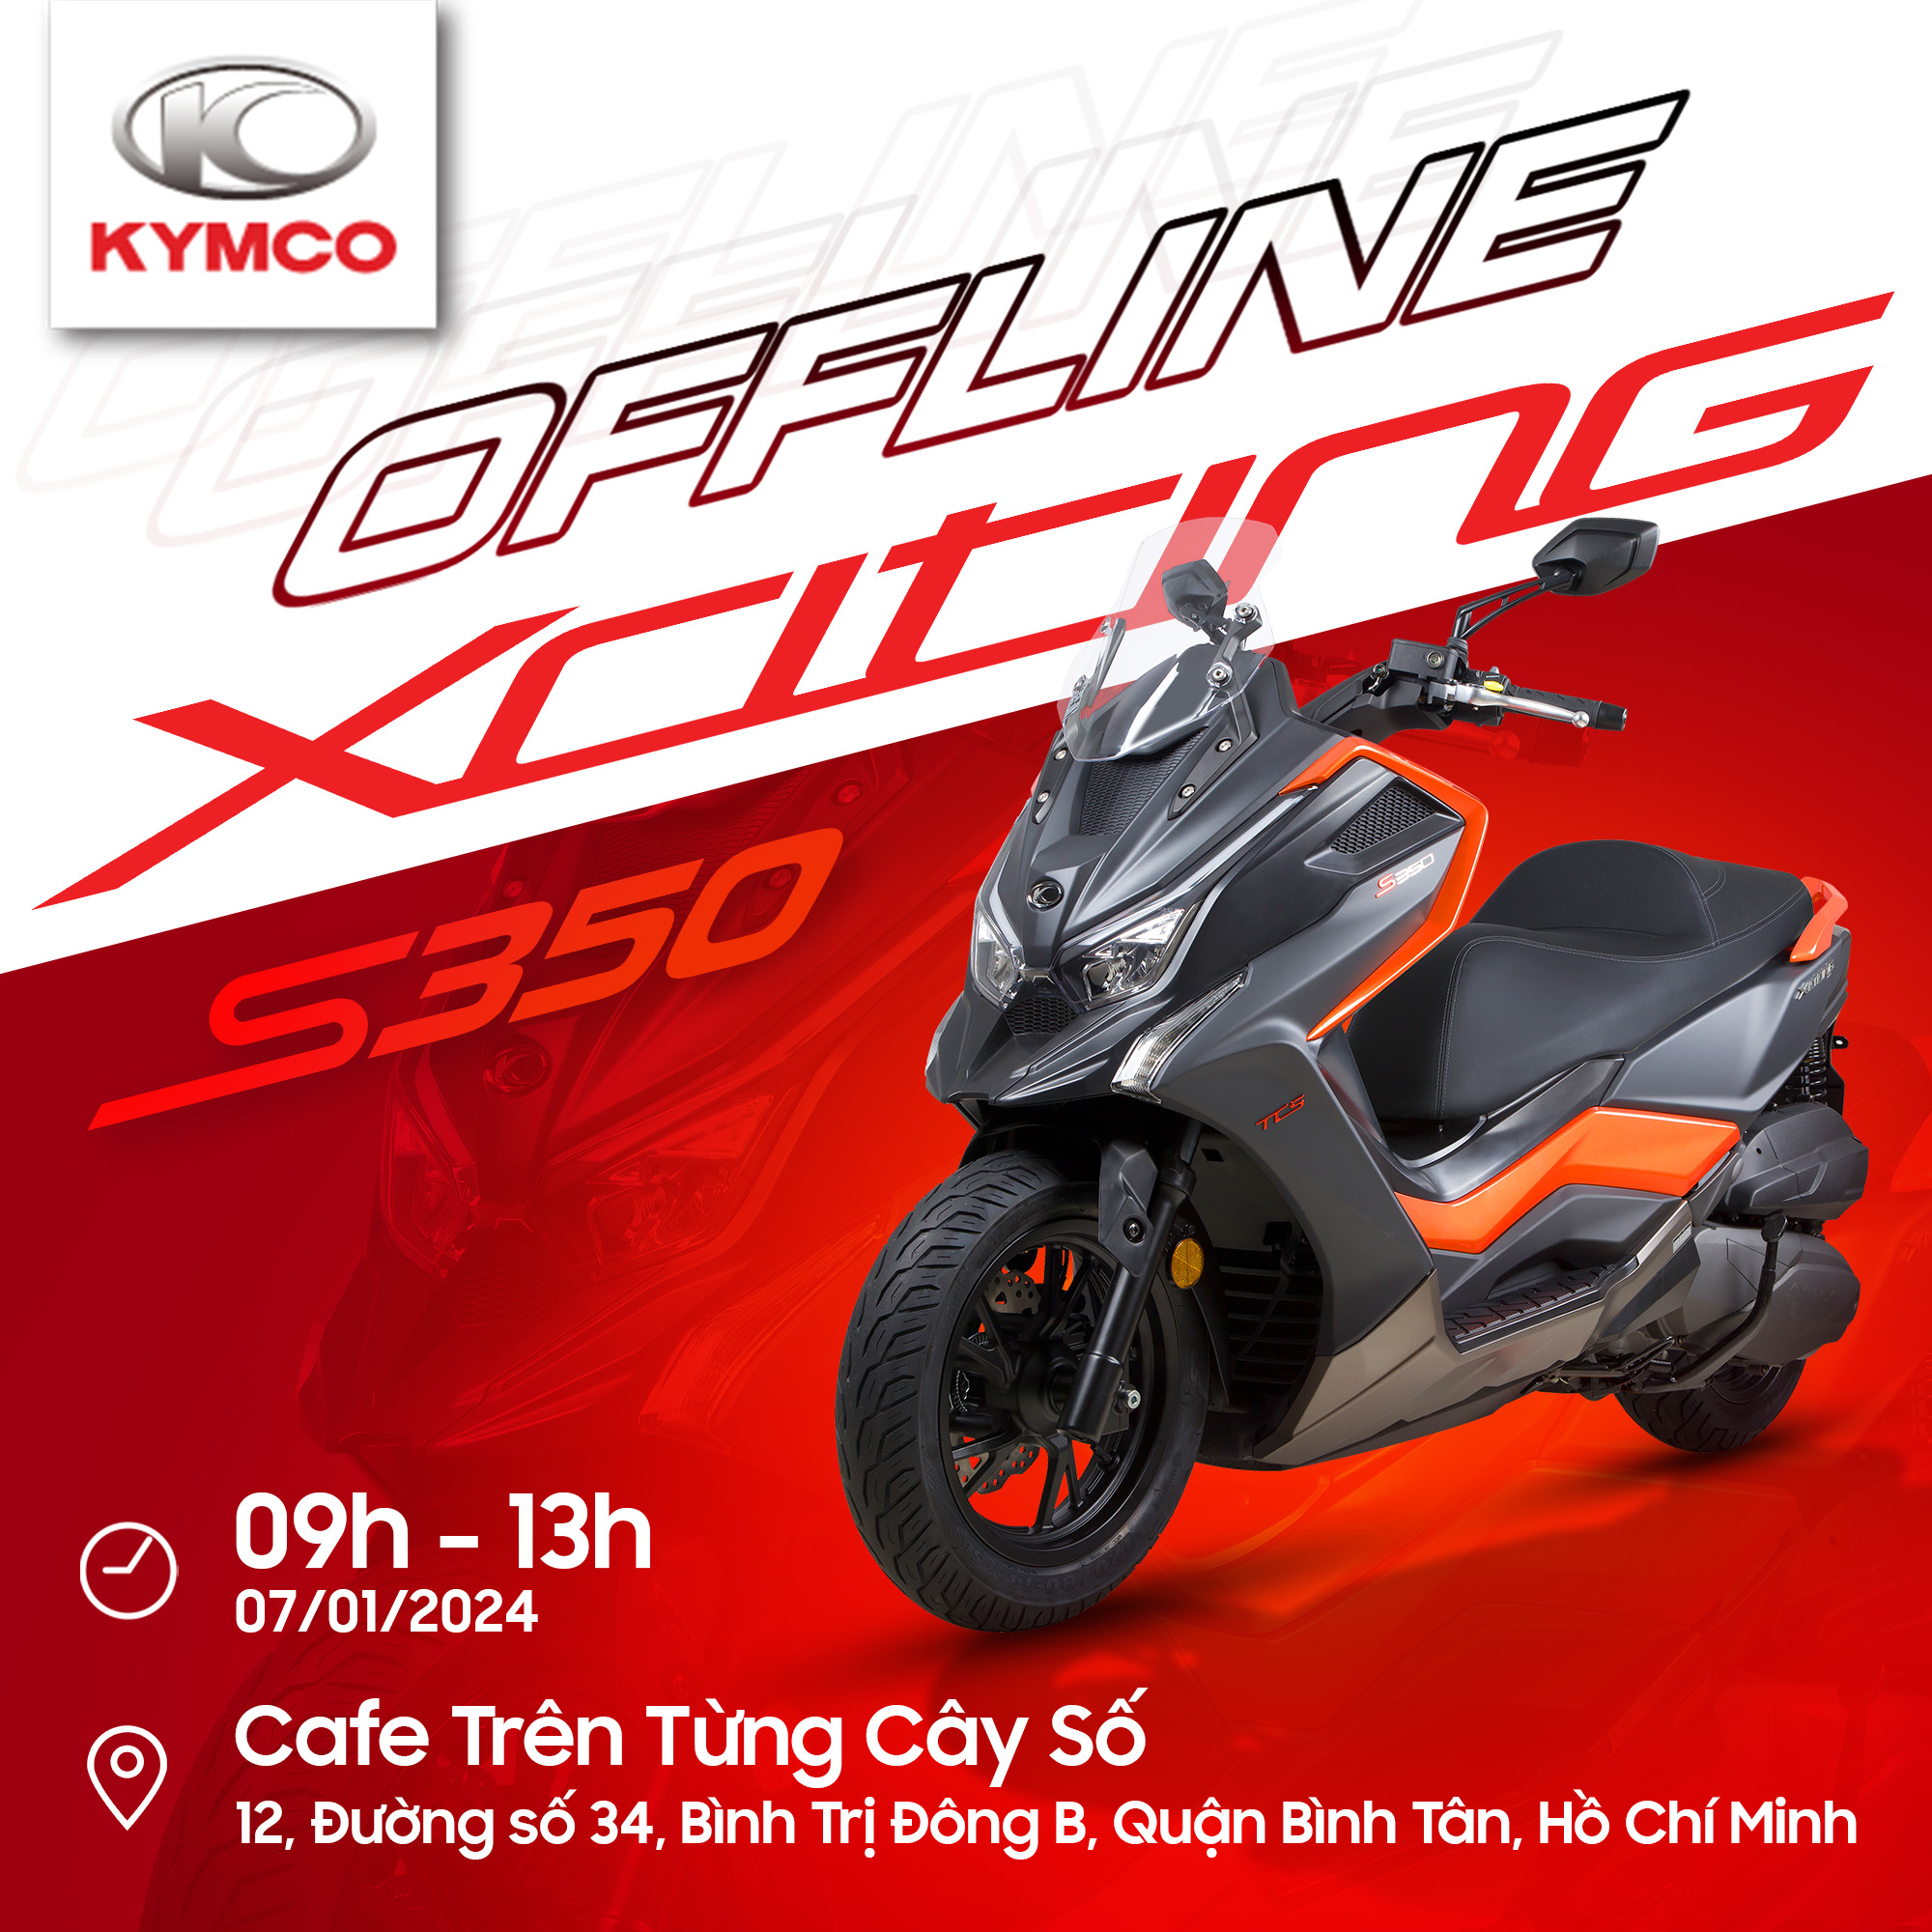 Cafe Offline Lái thử xe Xciting S350 đầu năm cùng Kymco Việt Nam